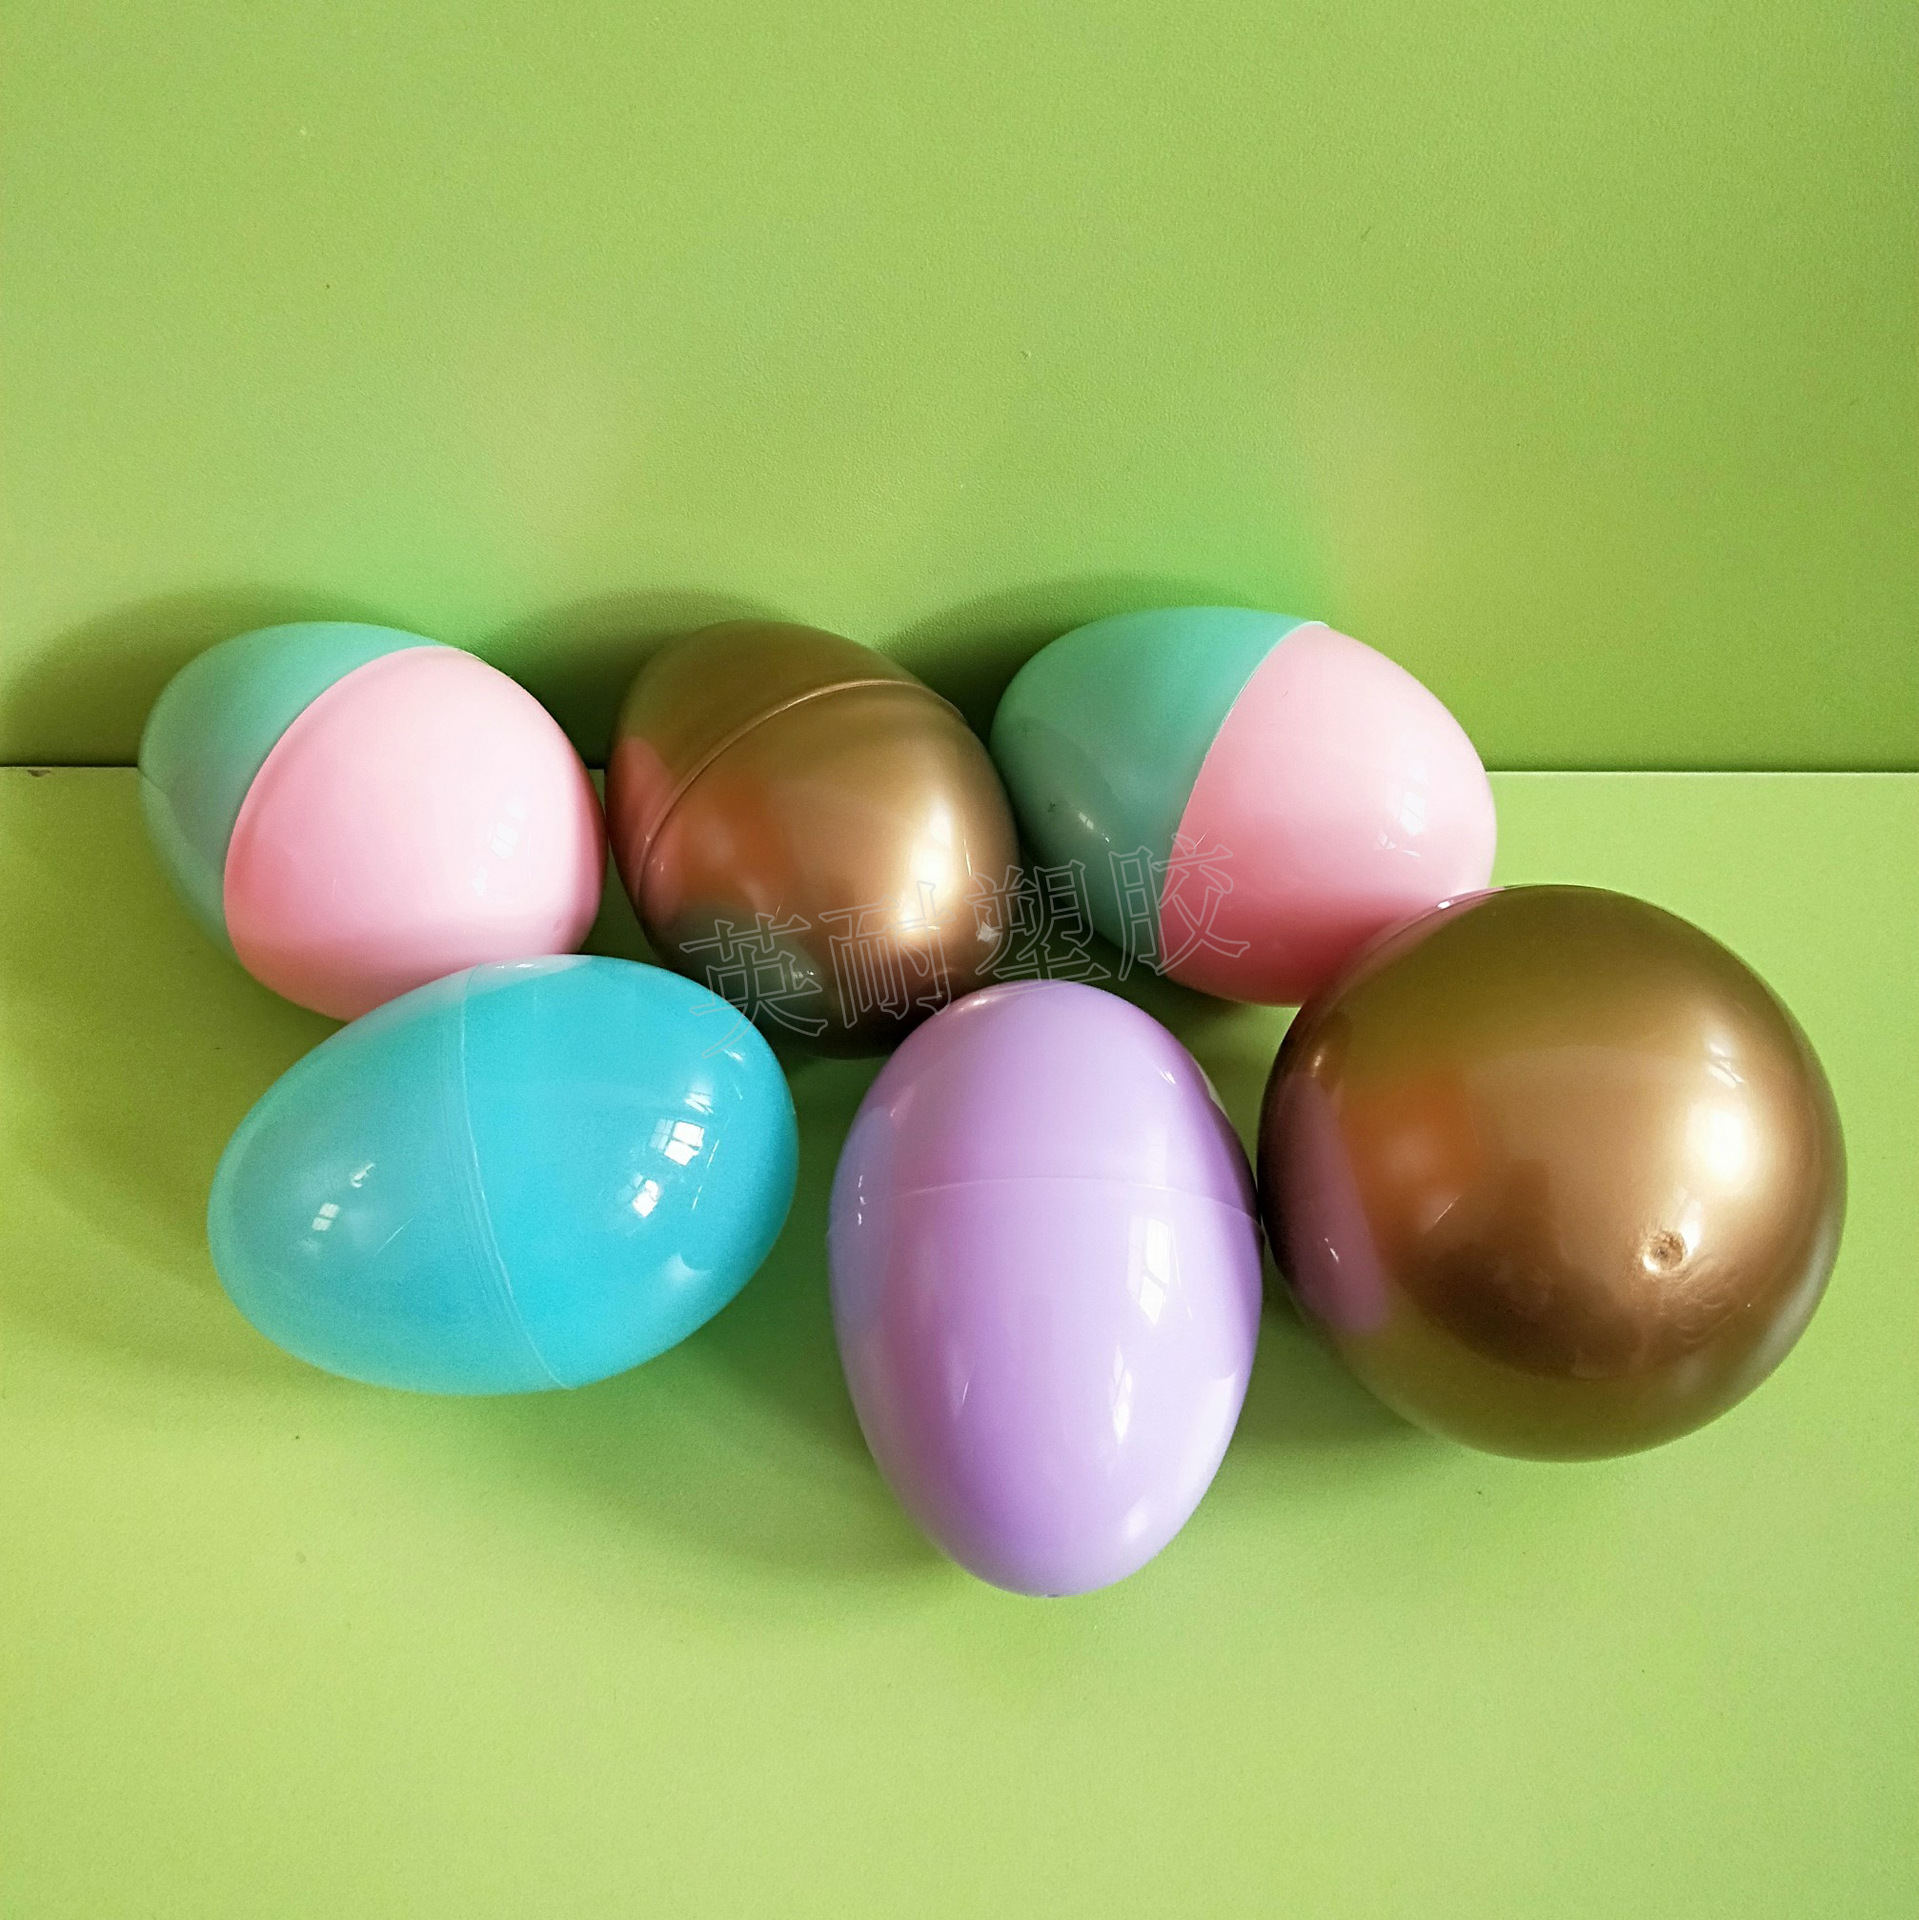 复活节彩蛋仿真鸡蛋 幼儿园 彩绘 儿童 diy填色彩绘蛋水彩笔套装-阿里巴巴